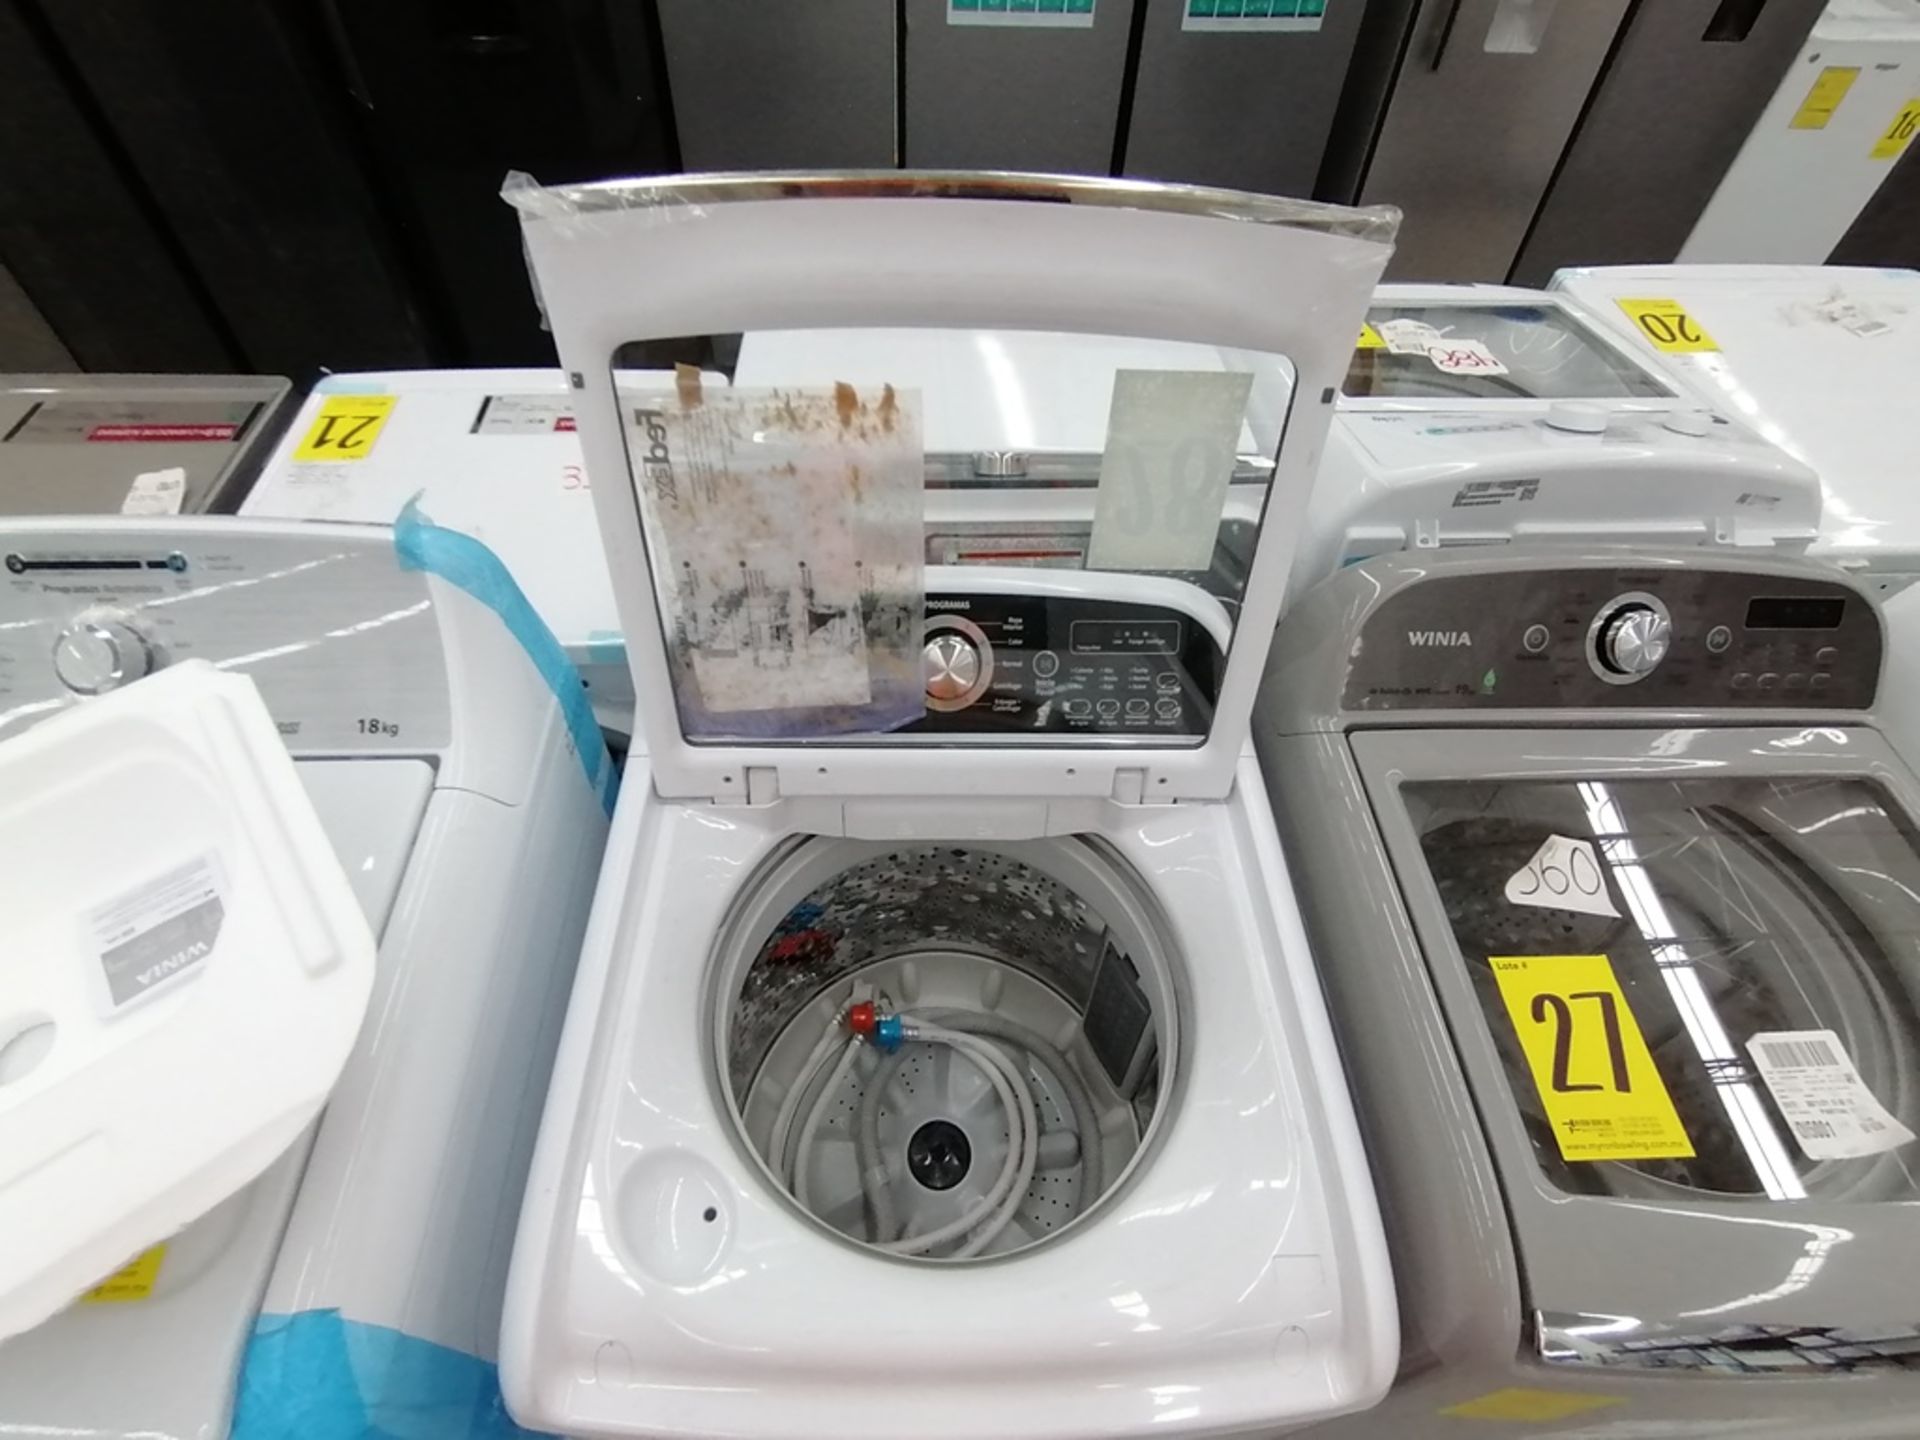 Lote de 3 lavadoras contiene: 1 Lavadora de 16KG, Marca Mabe, Modelo LMA46102VBAB02, Serie 2108S802 - Image 7 of 29